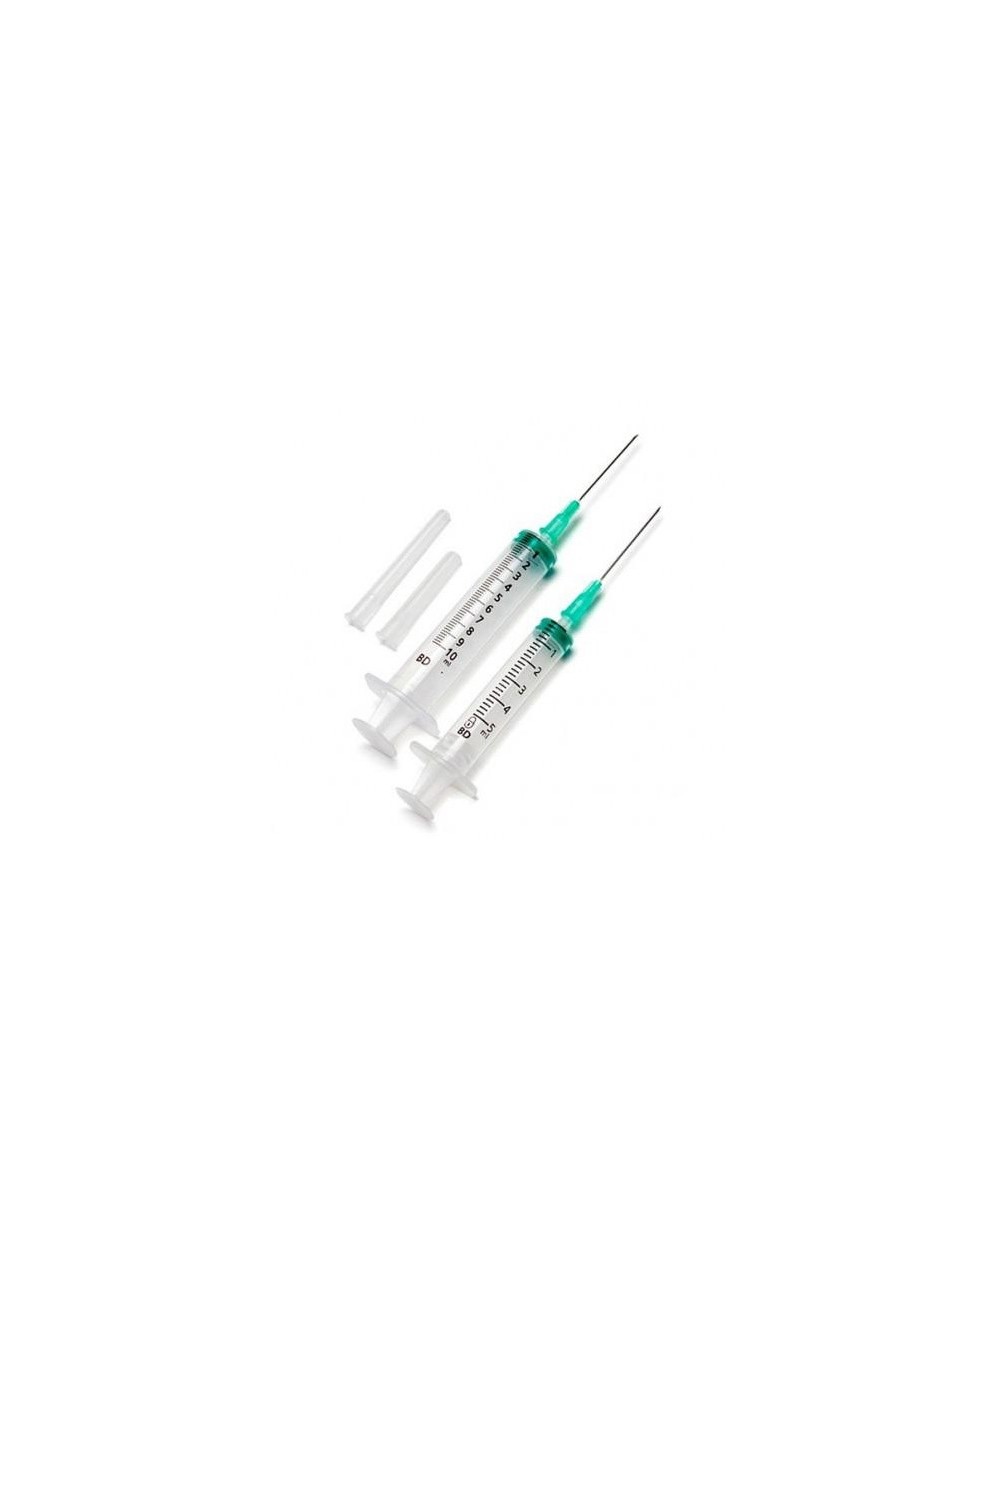 BD - Emerald Syringe C/A 5ml 21g 0,8 X 40mm